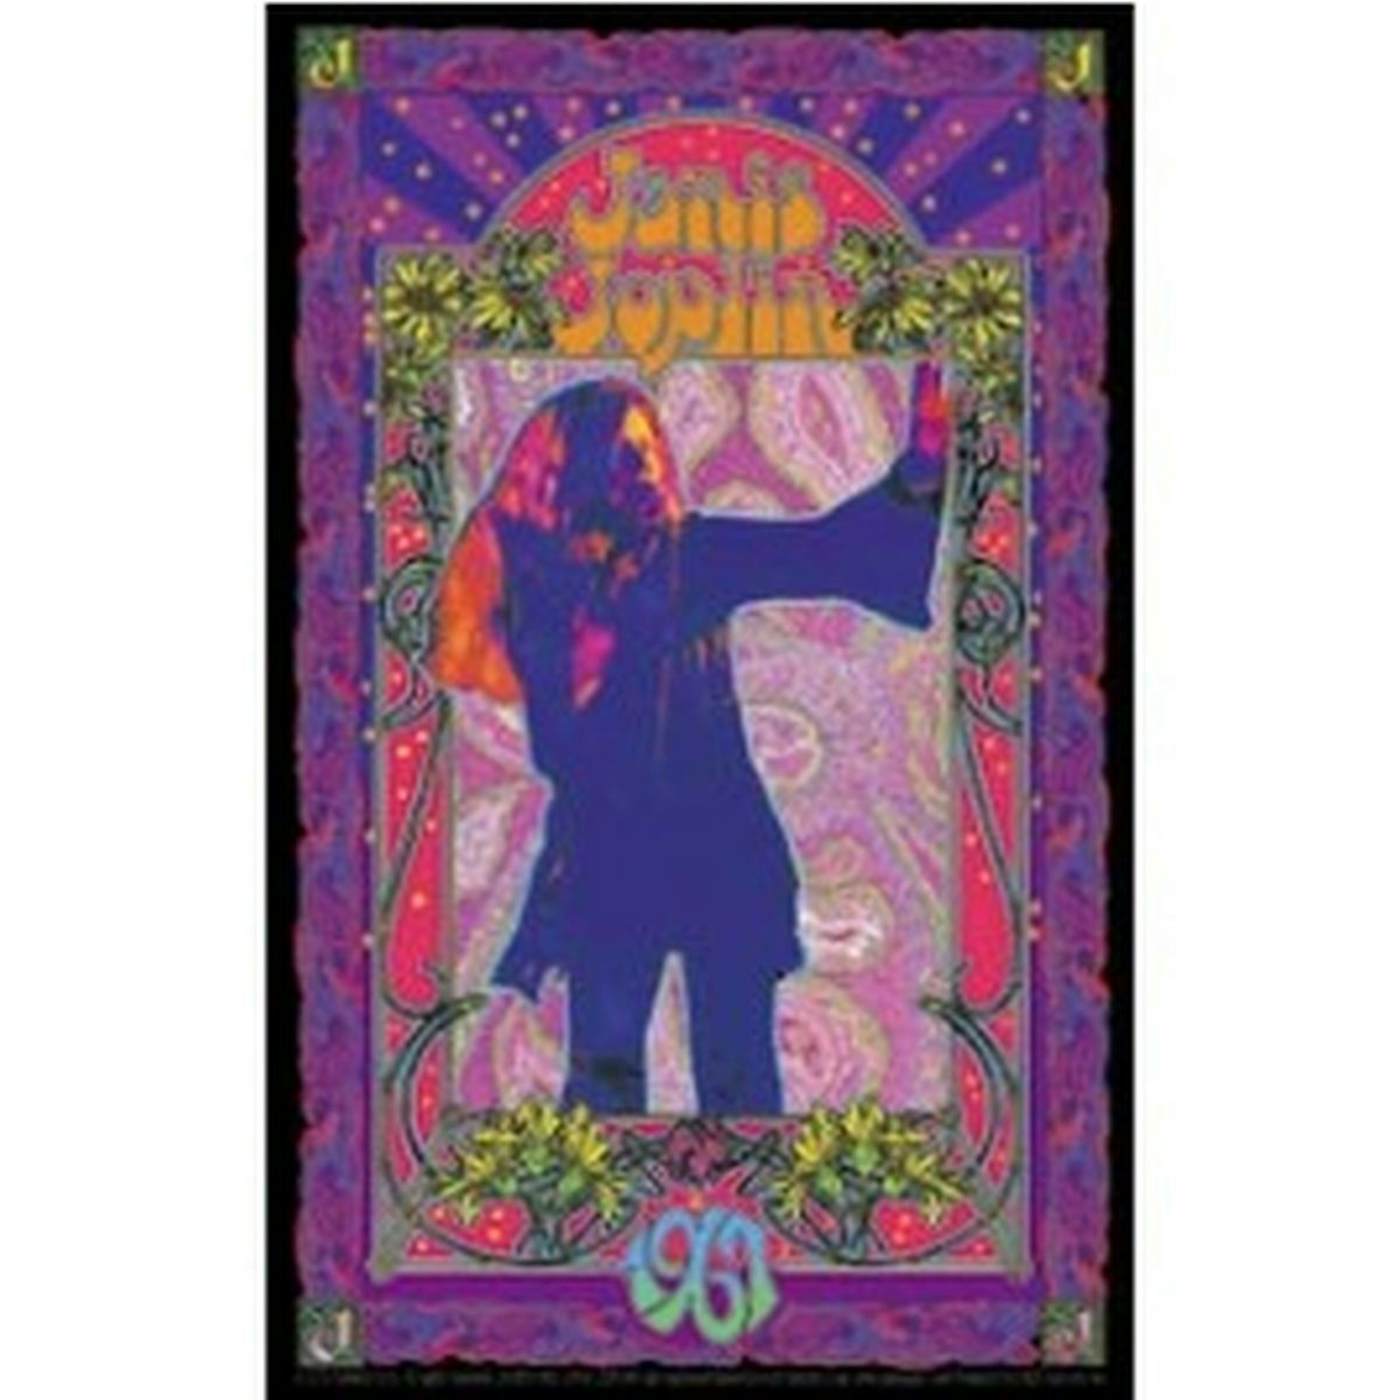 Janis Joplin Poster Sticker